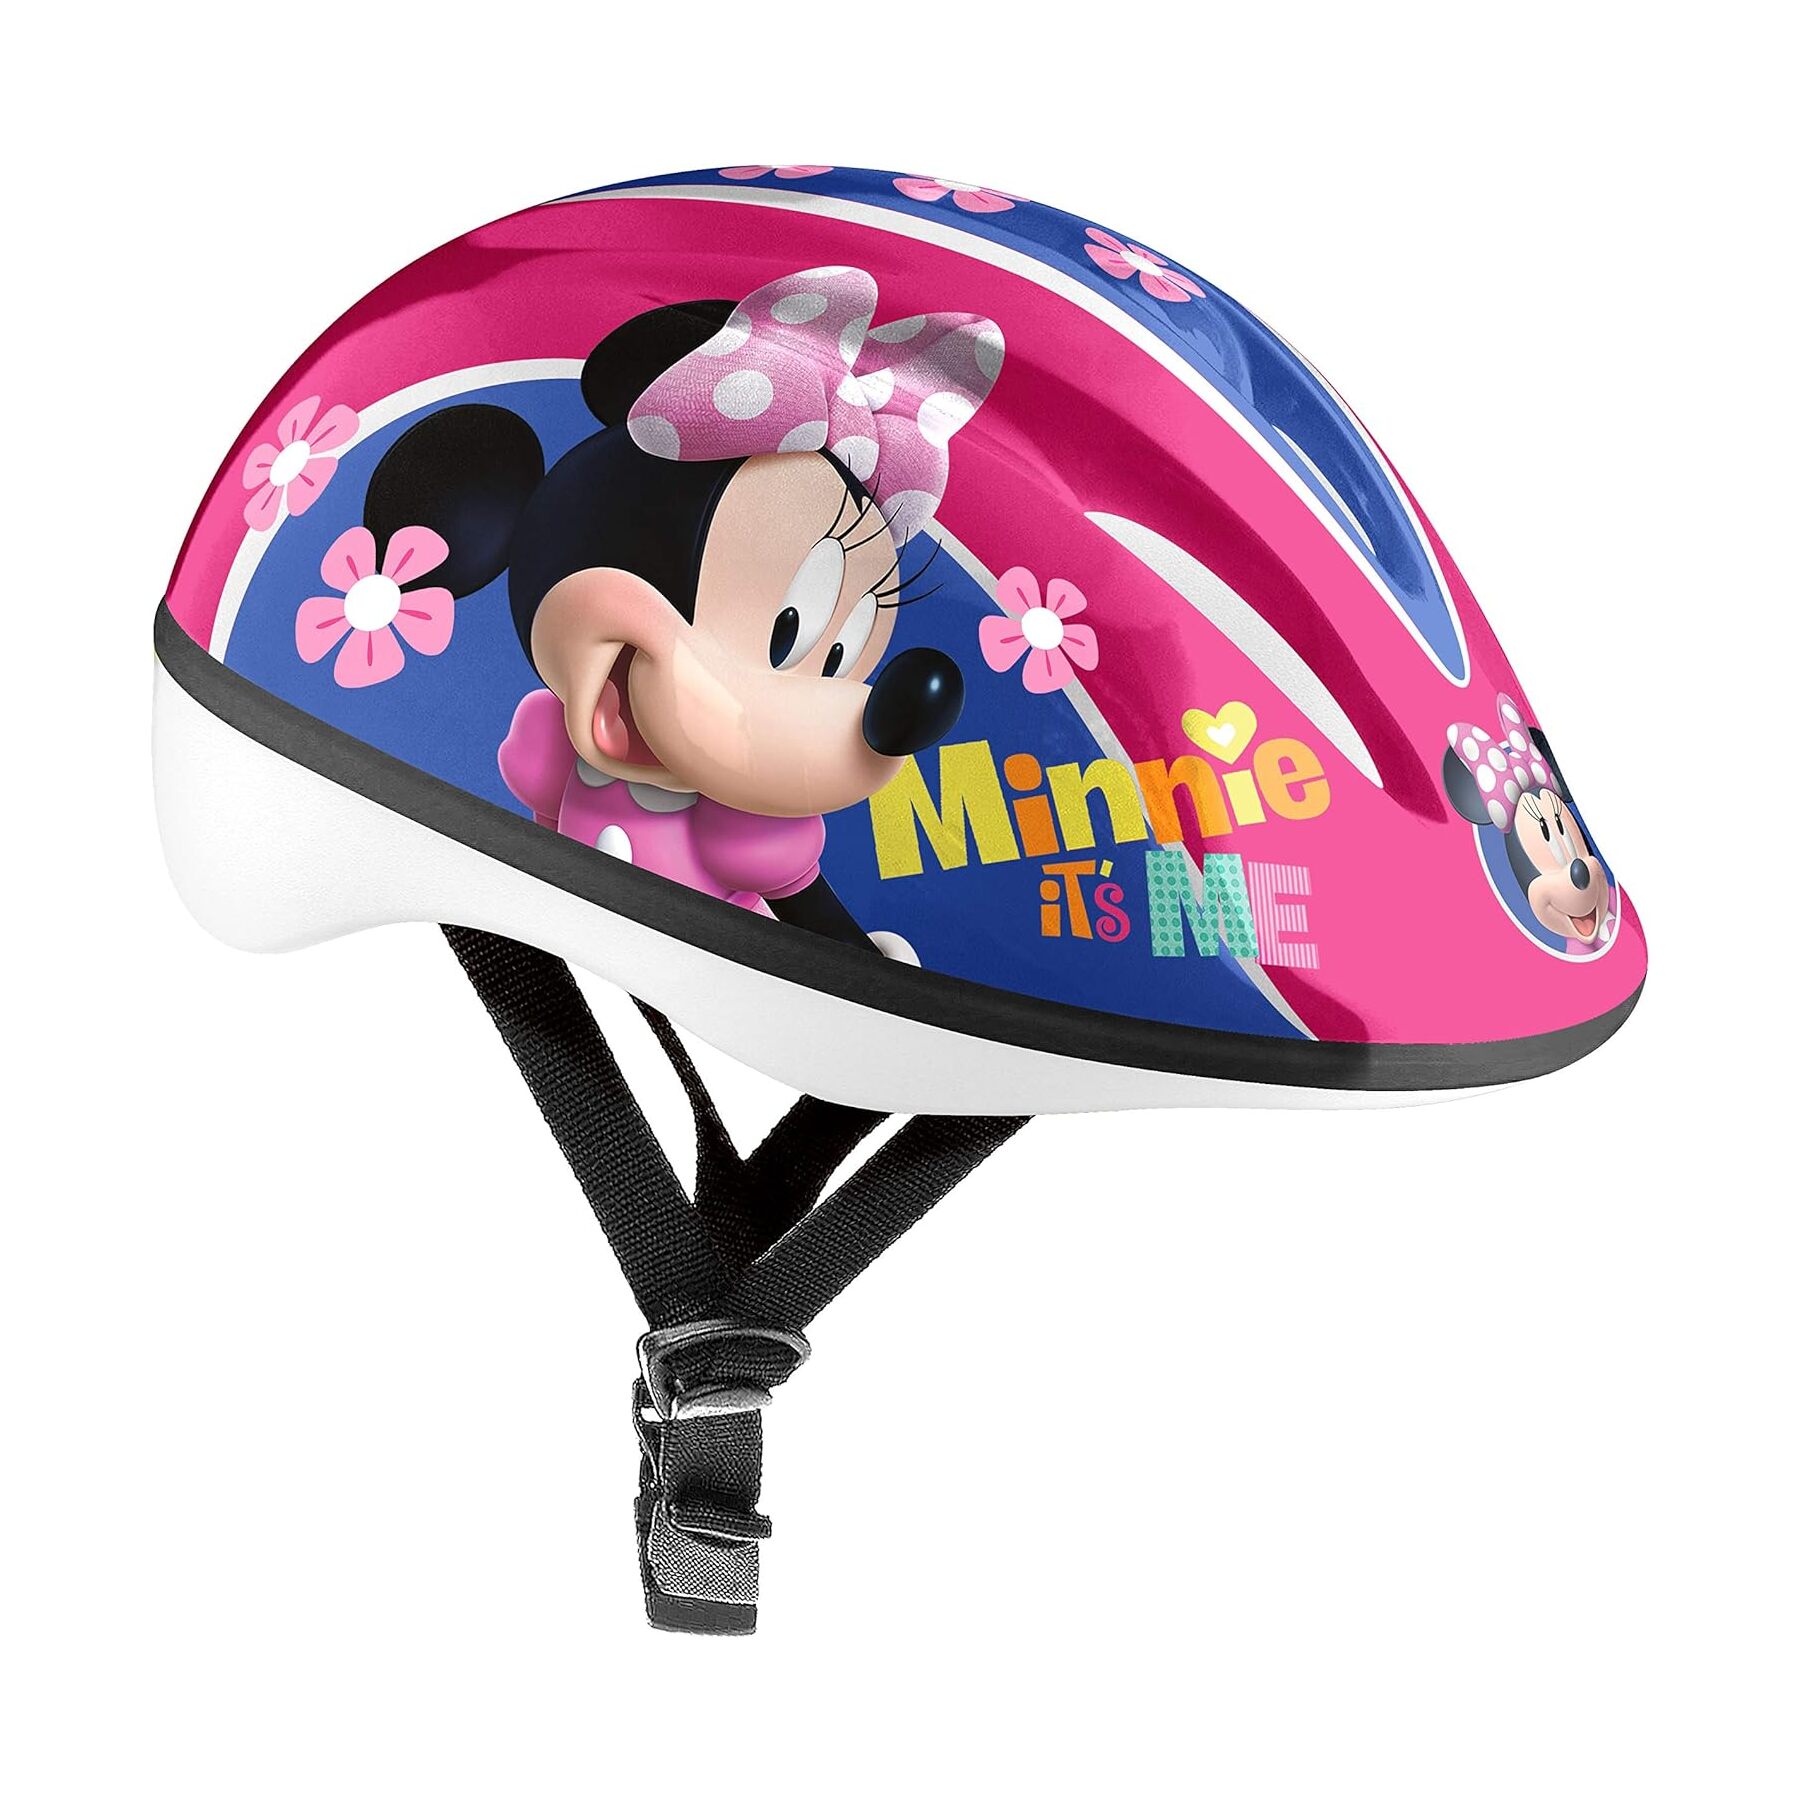 Casco Infantil Disney Minnie Mouse 53-56 Cm - rosa - 